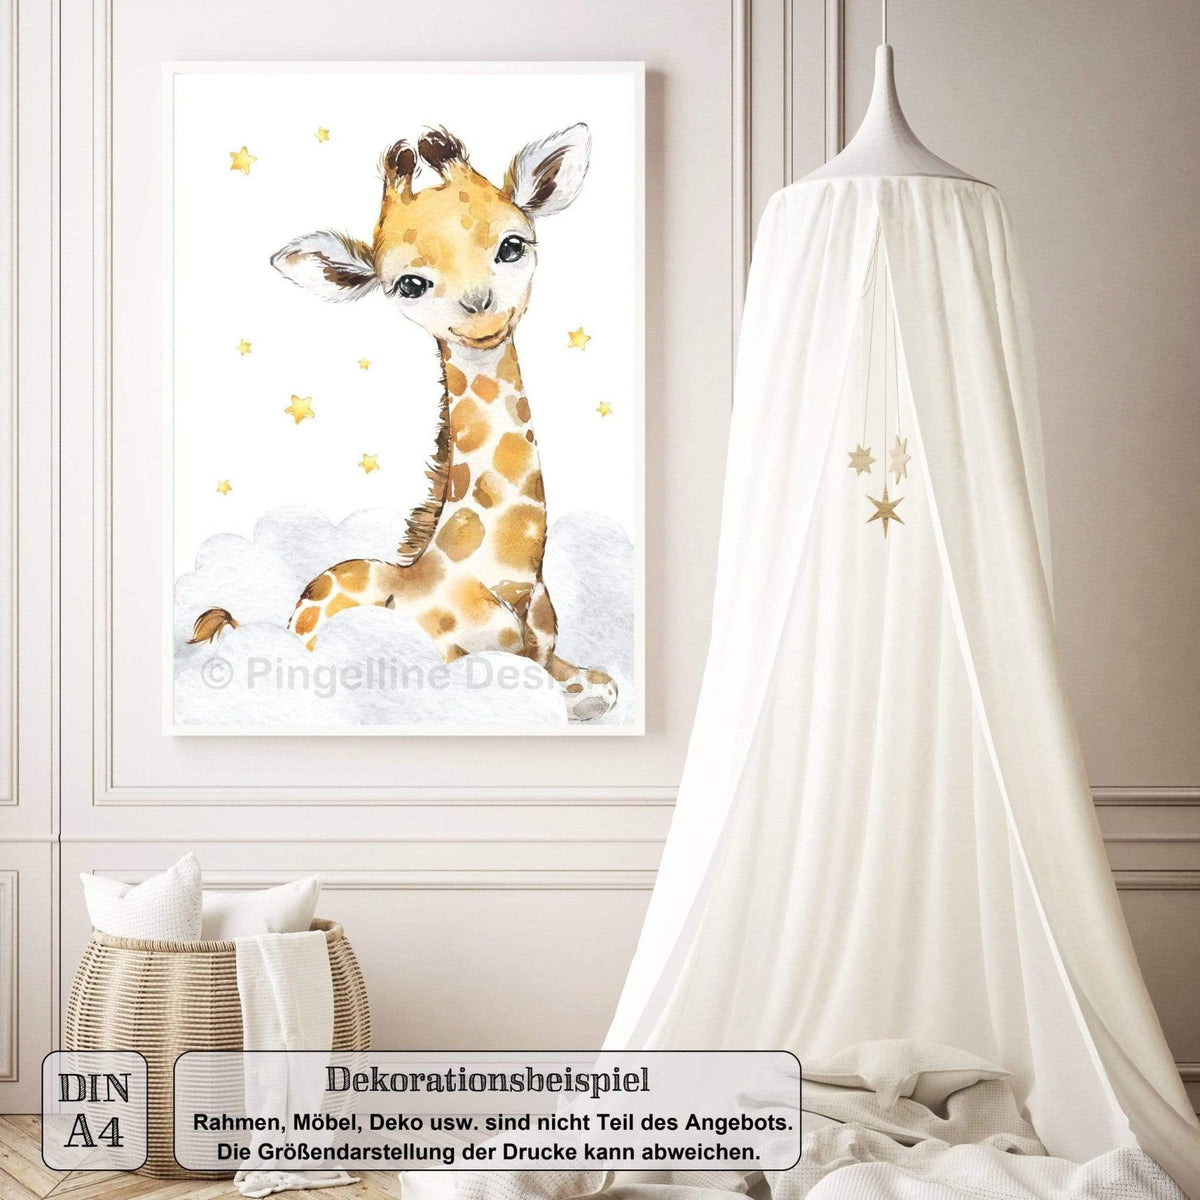 Bilder Tiere Kinderzimmer - A4 4er / A3 Design Set Pingelline Safari